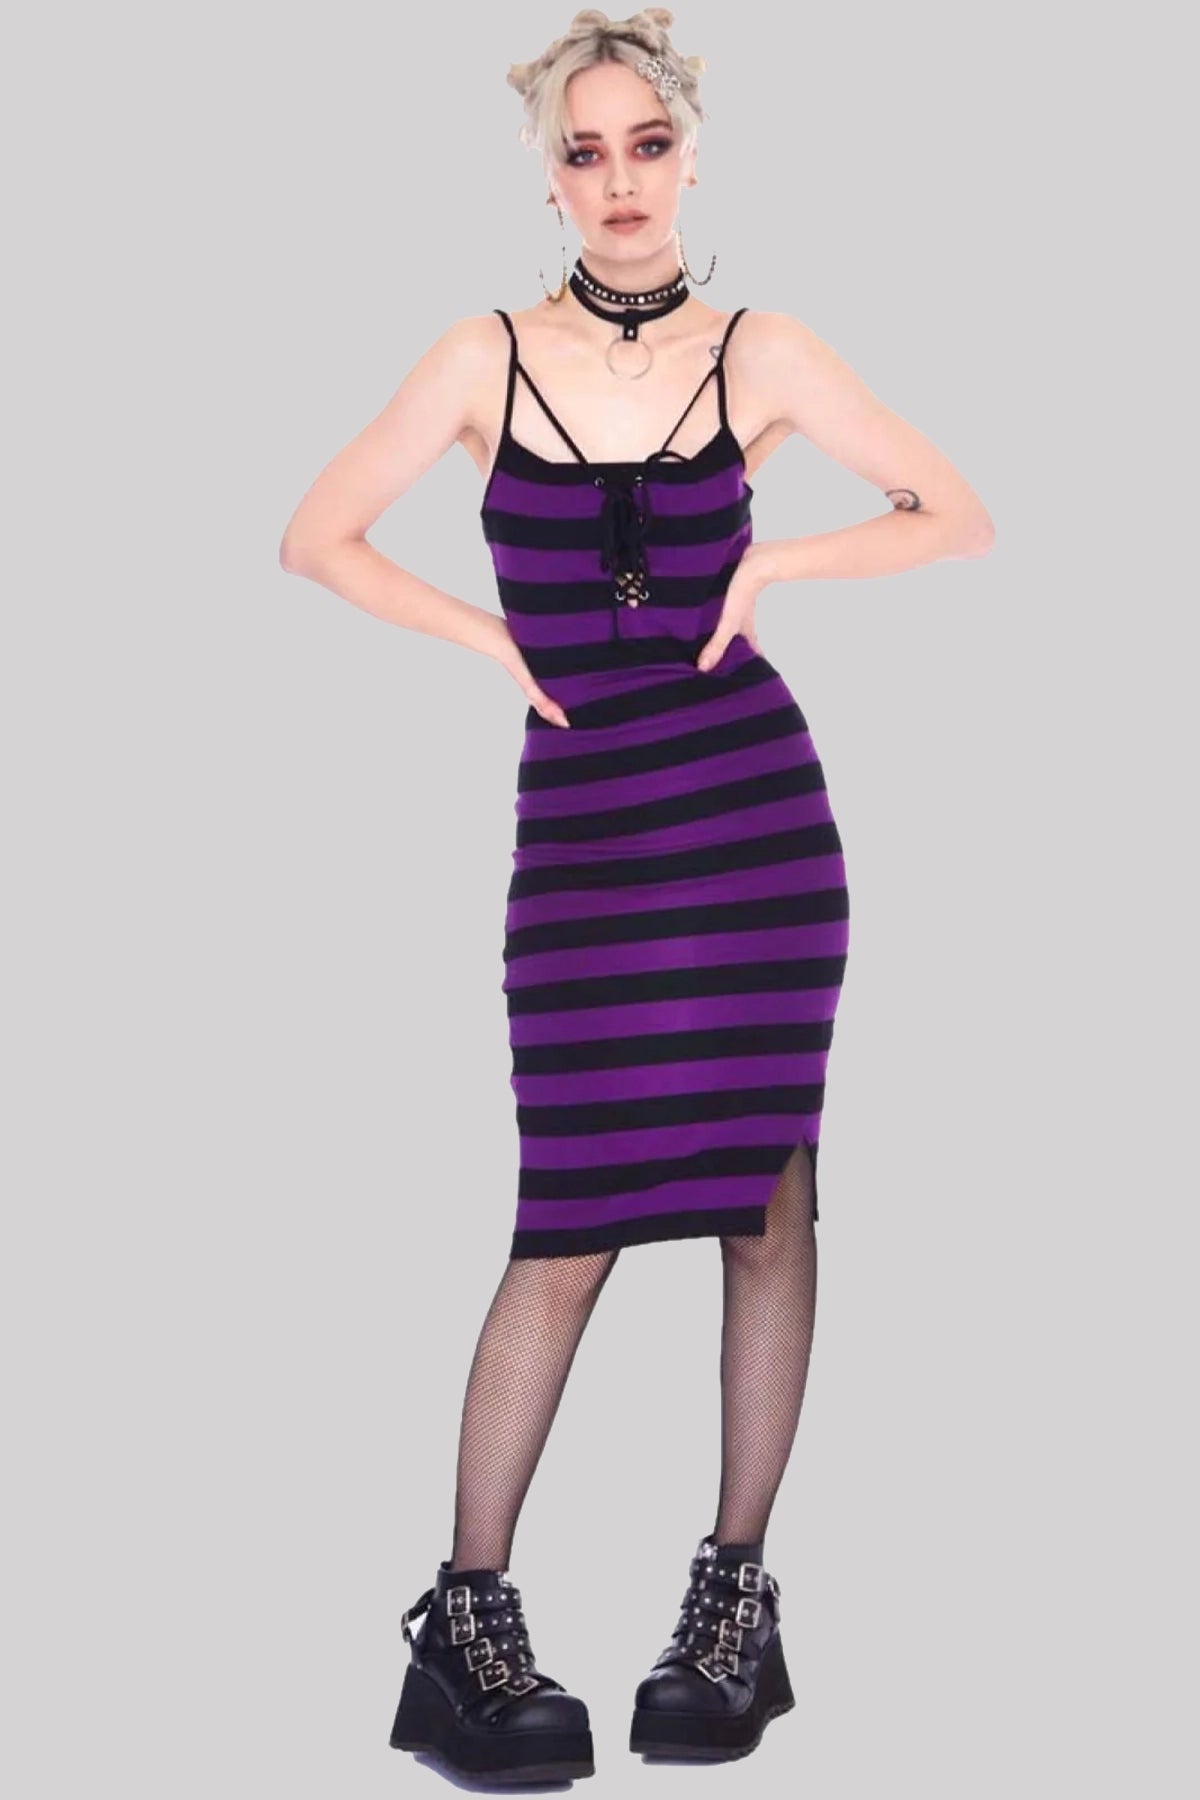 Jawbreaker Purple Stripe Bodycon Strappy Dress Grunge Gothic